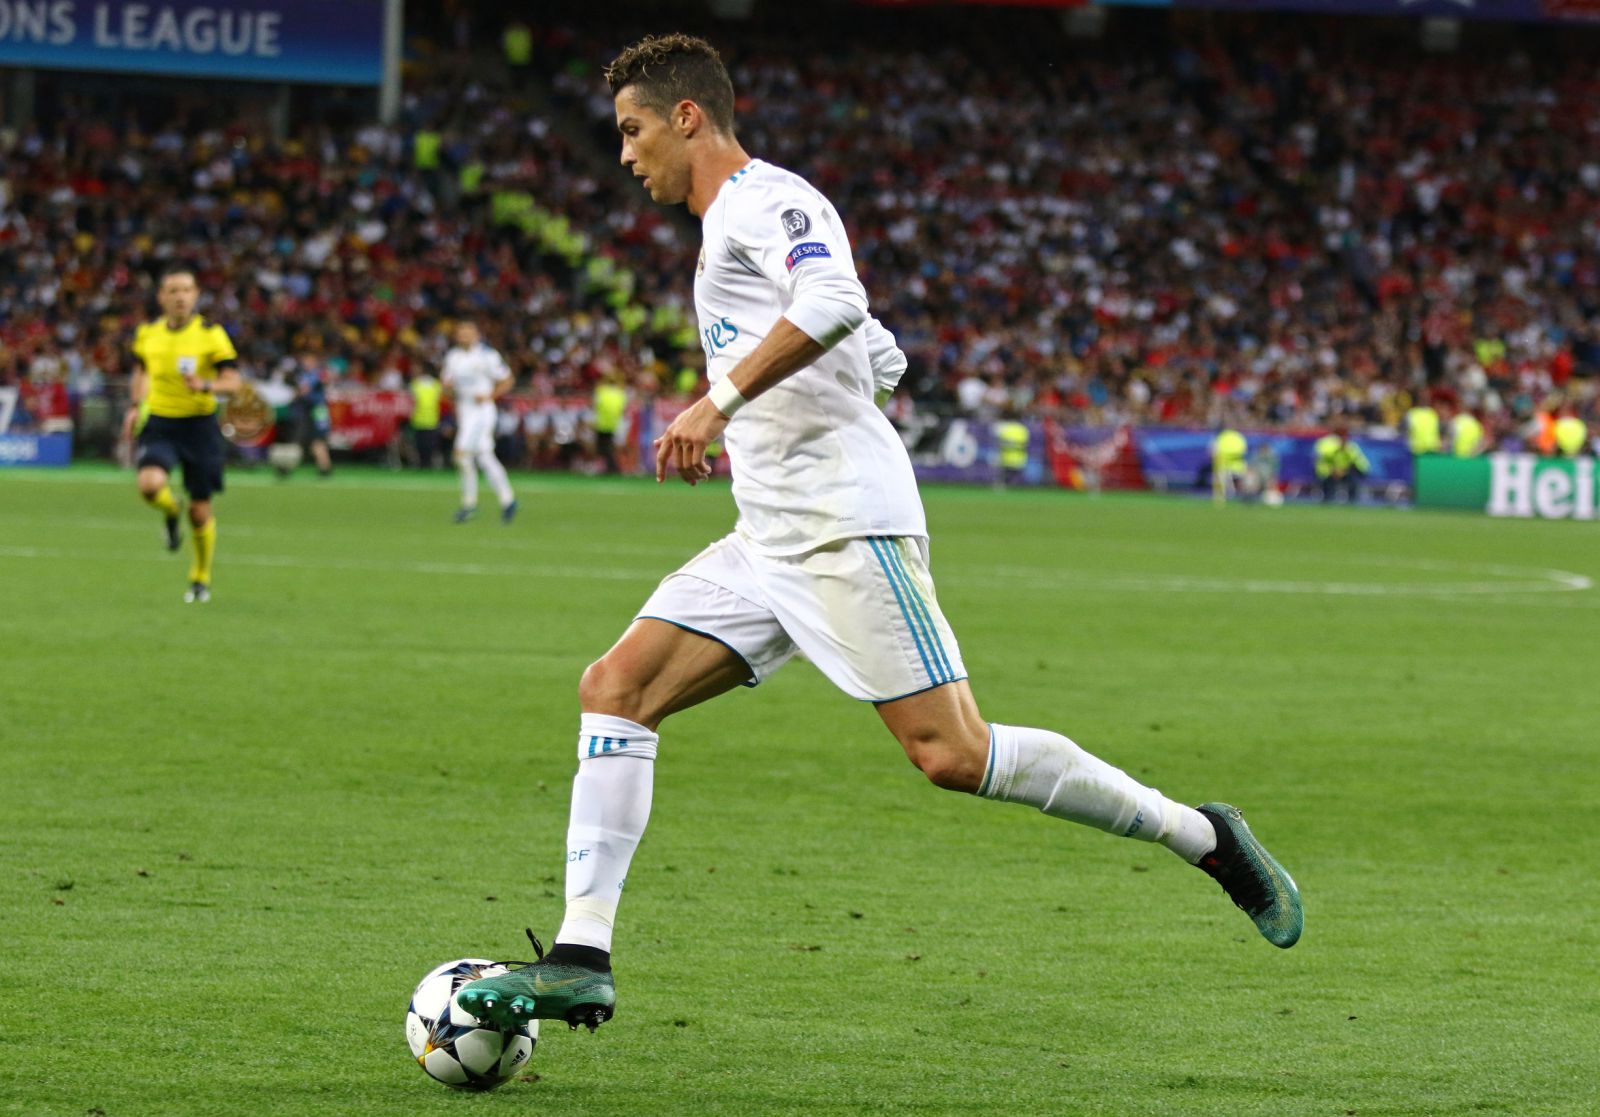 Cristiano Ronaldo correndo no campo de futebol com a bola em seu pé